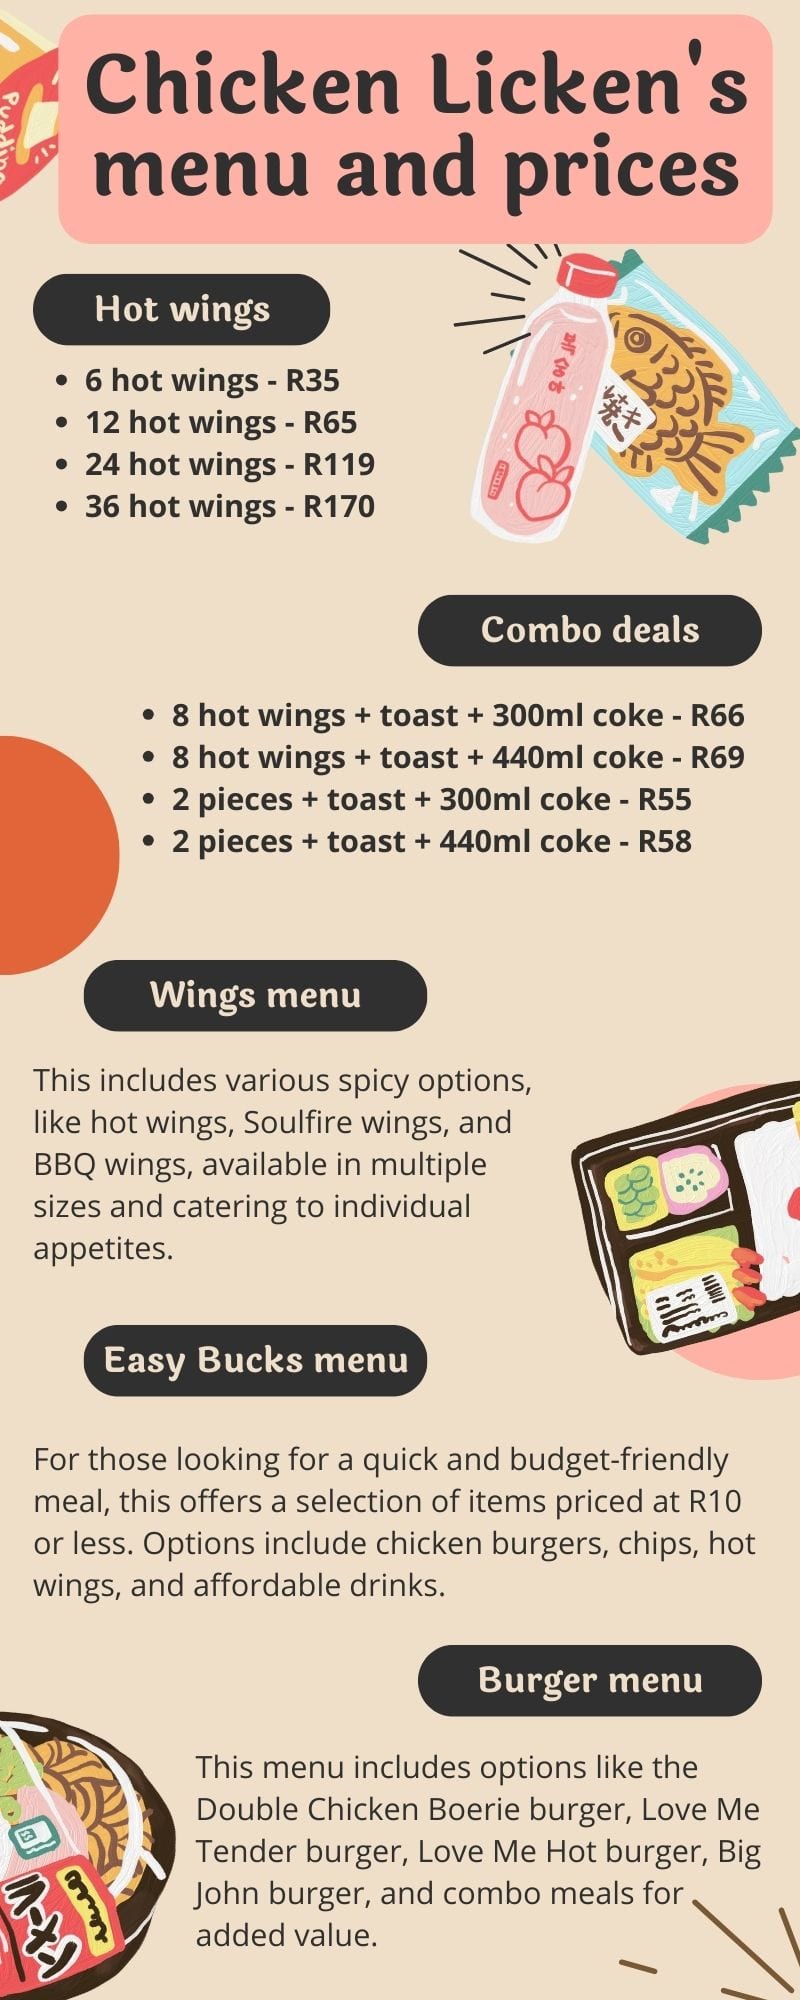 Chicken Licken's menu and prices